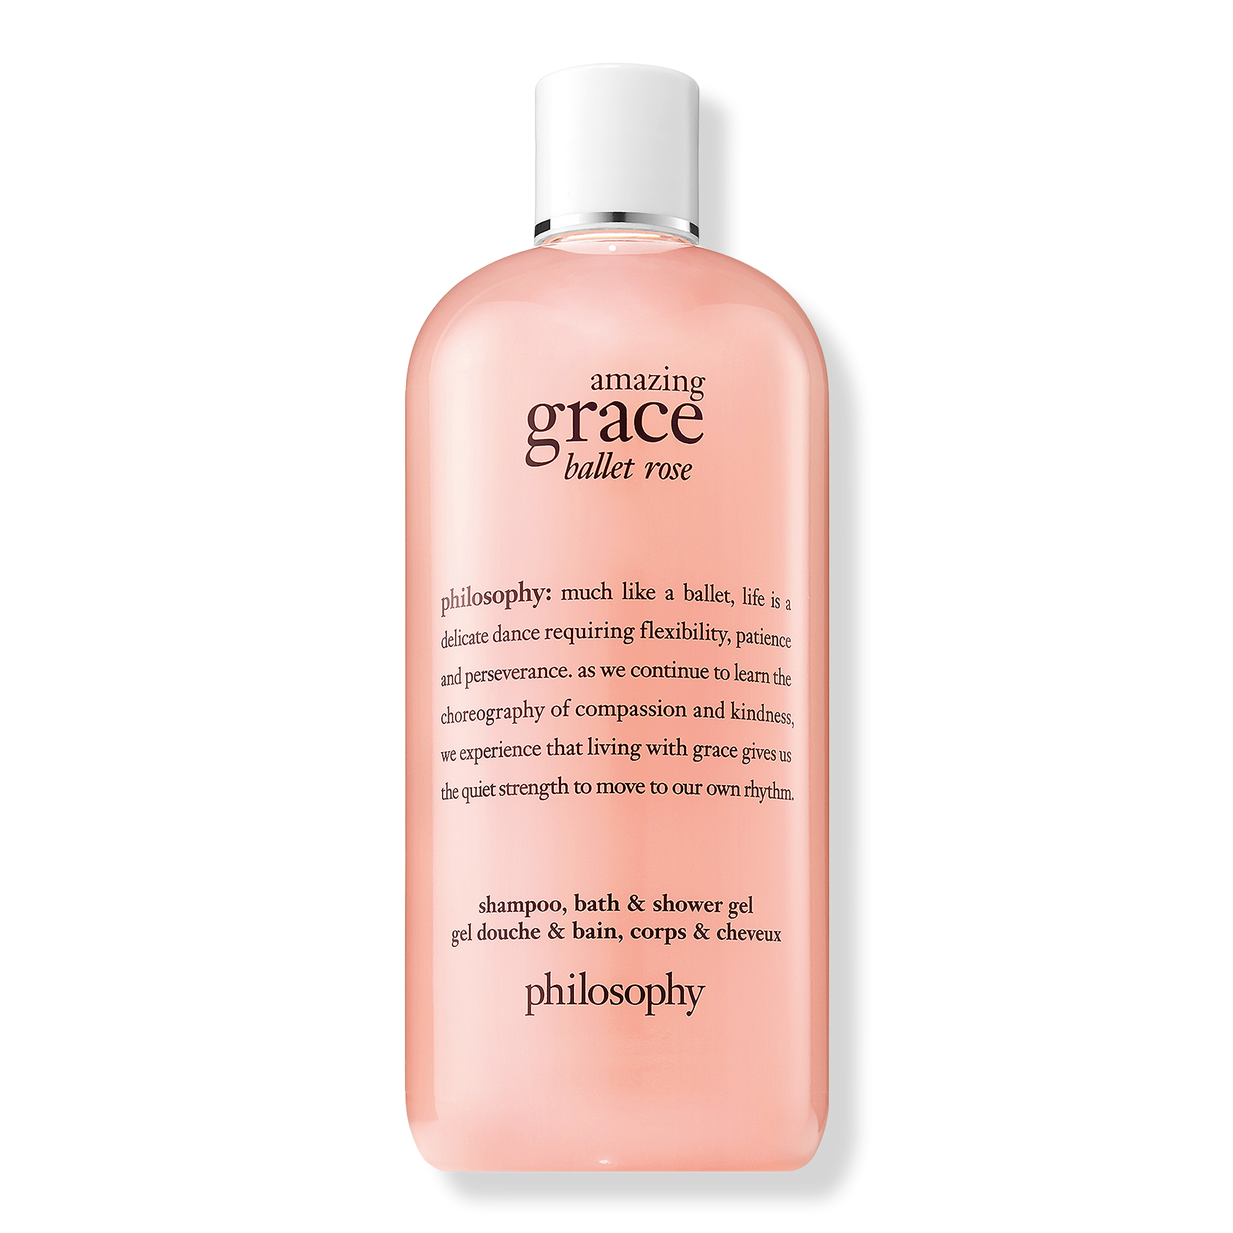 Amazing Grace Ballet Shampoo, Shower Gel - Philosophy | Ulta Beauty